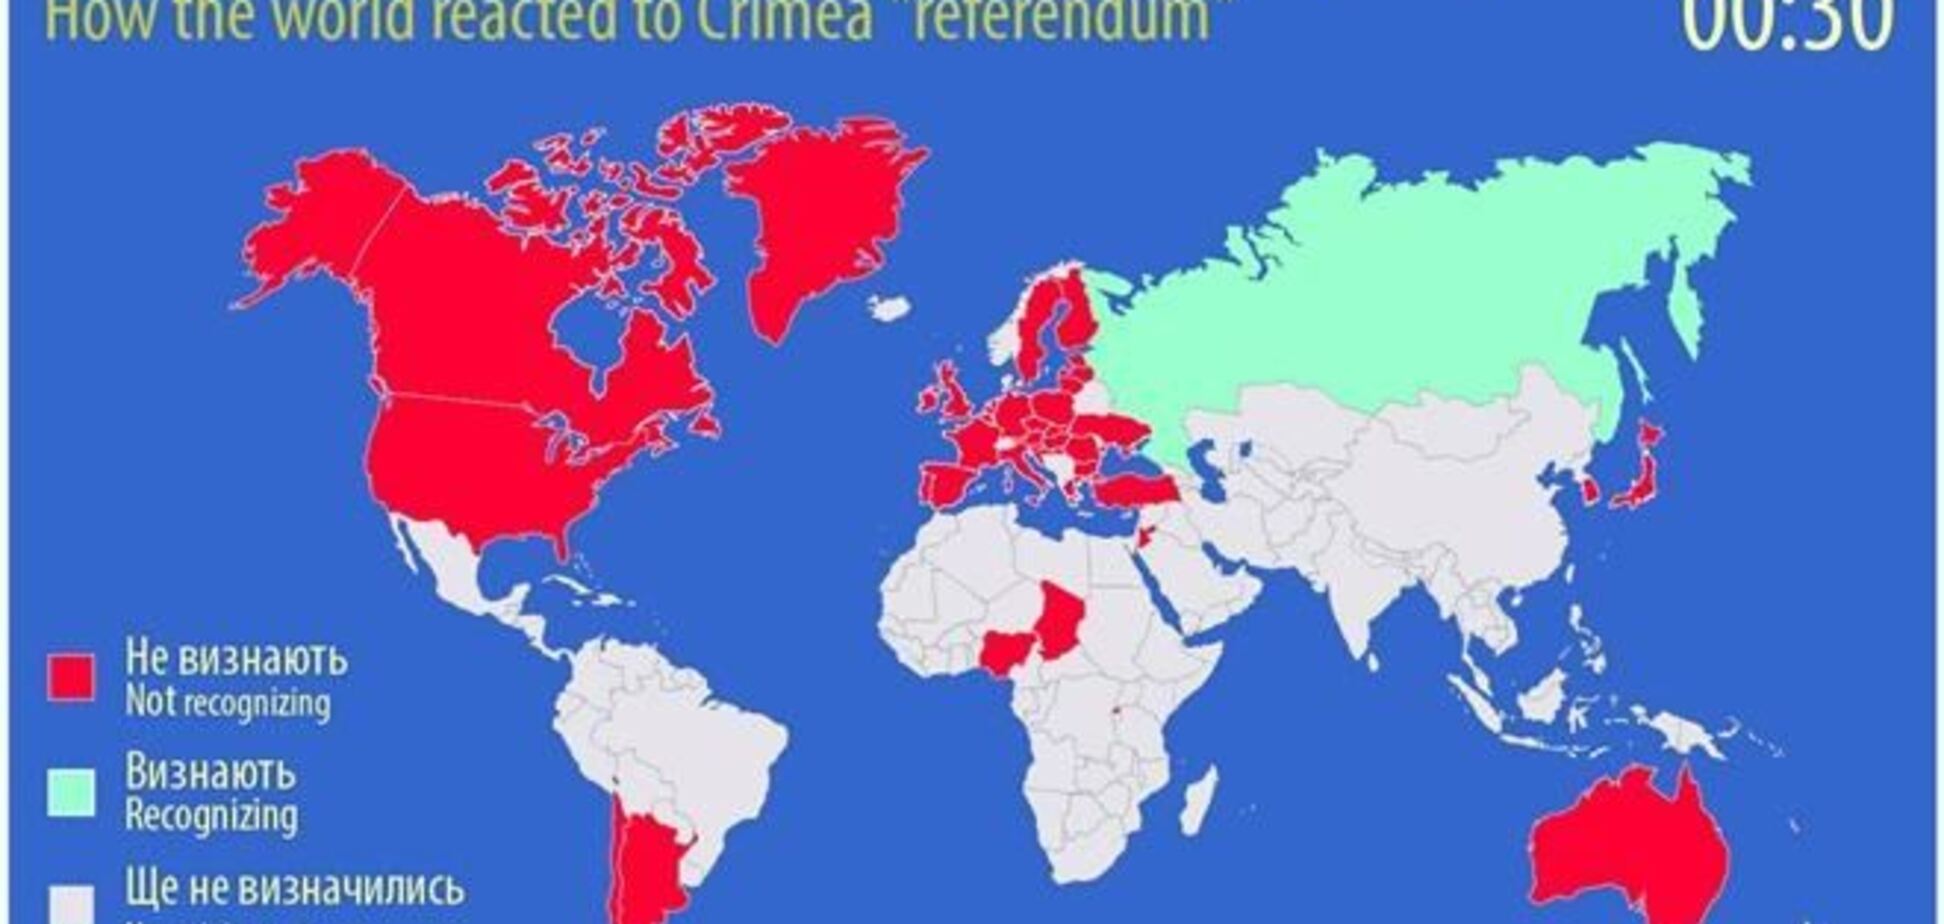 Как за час изменилась реакция мира на крымский 'референдум'